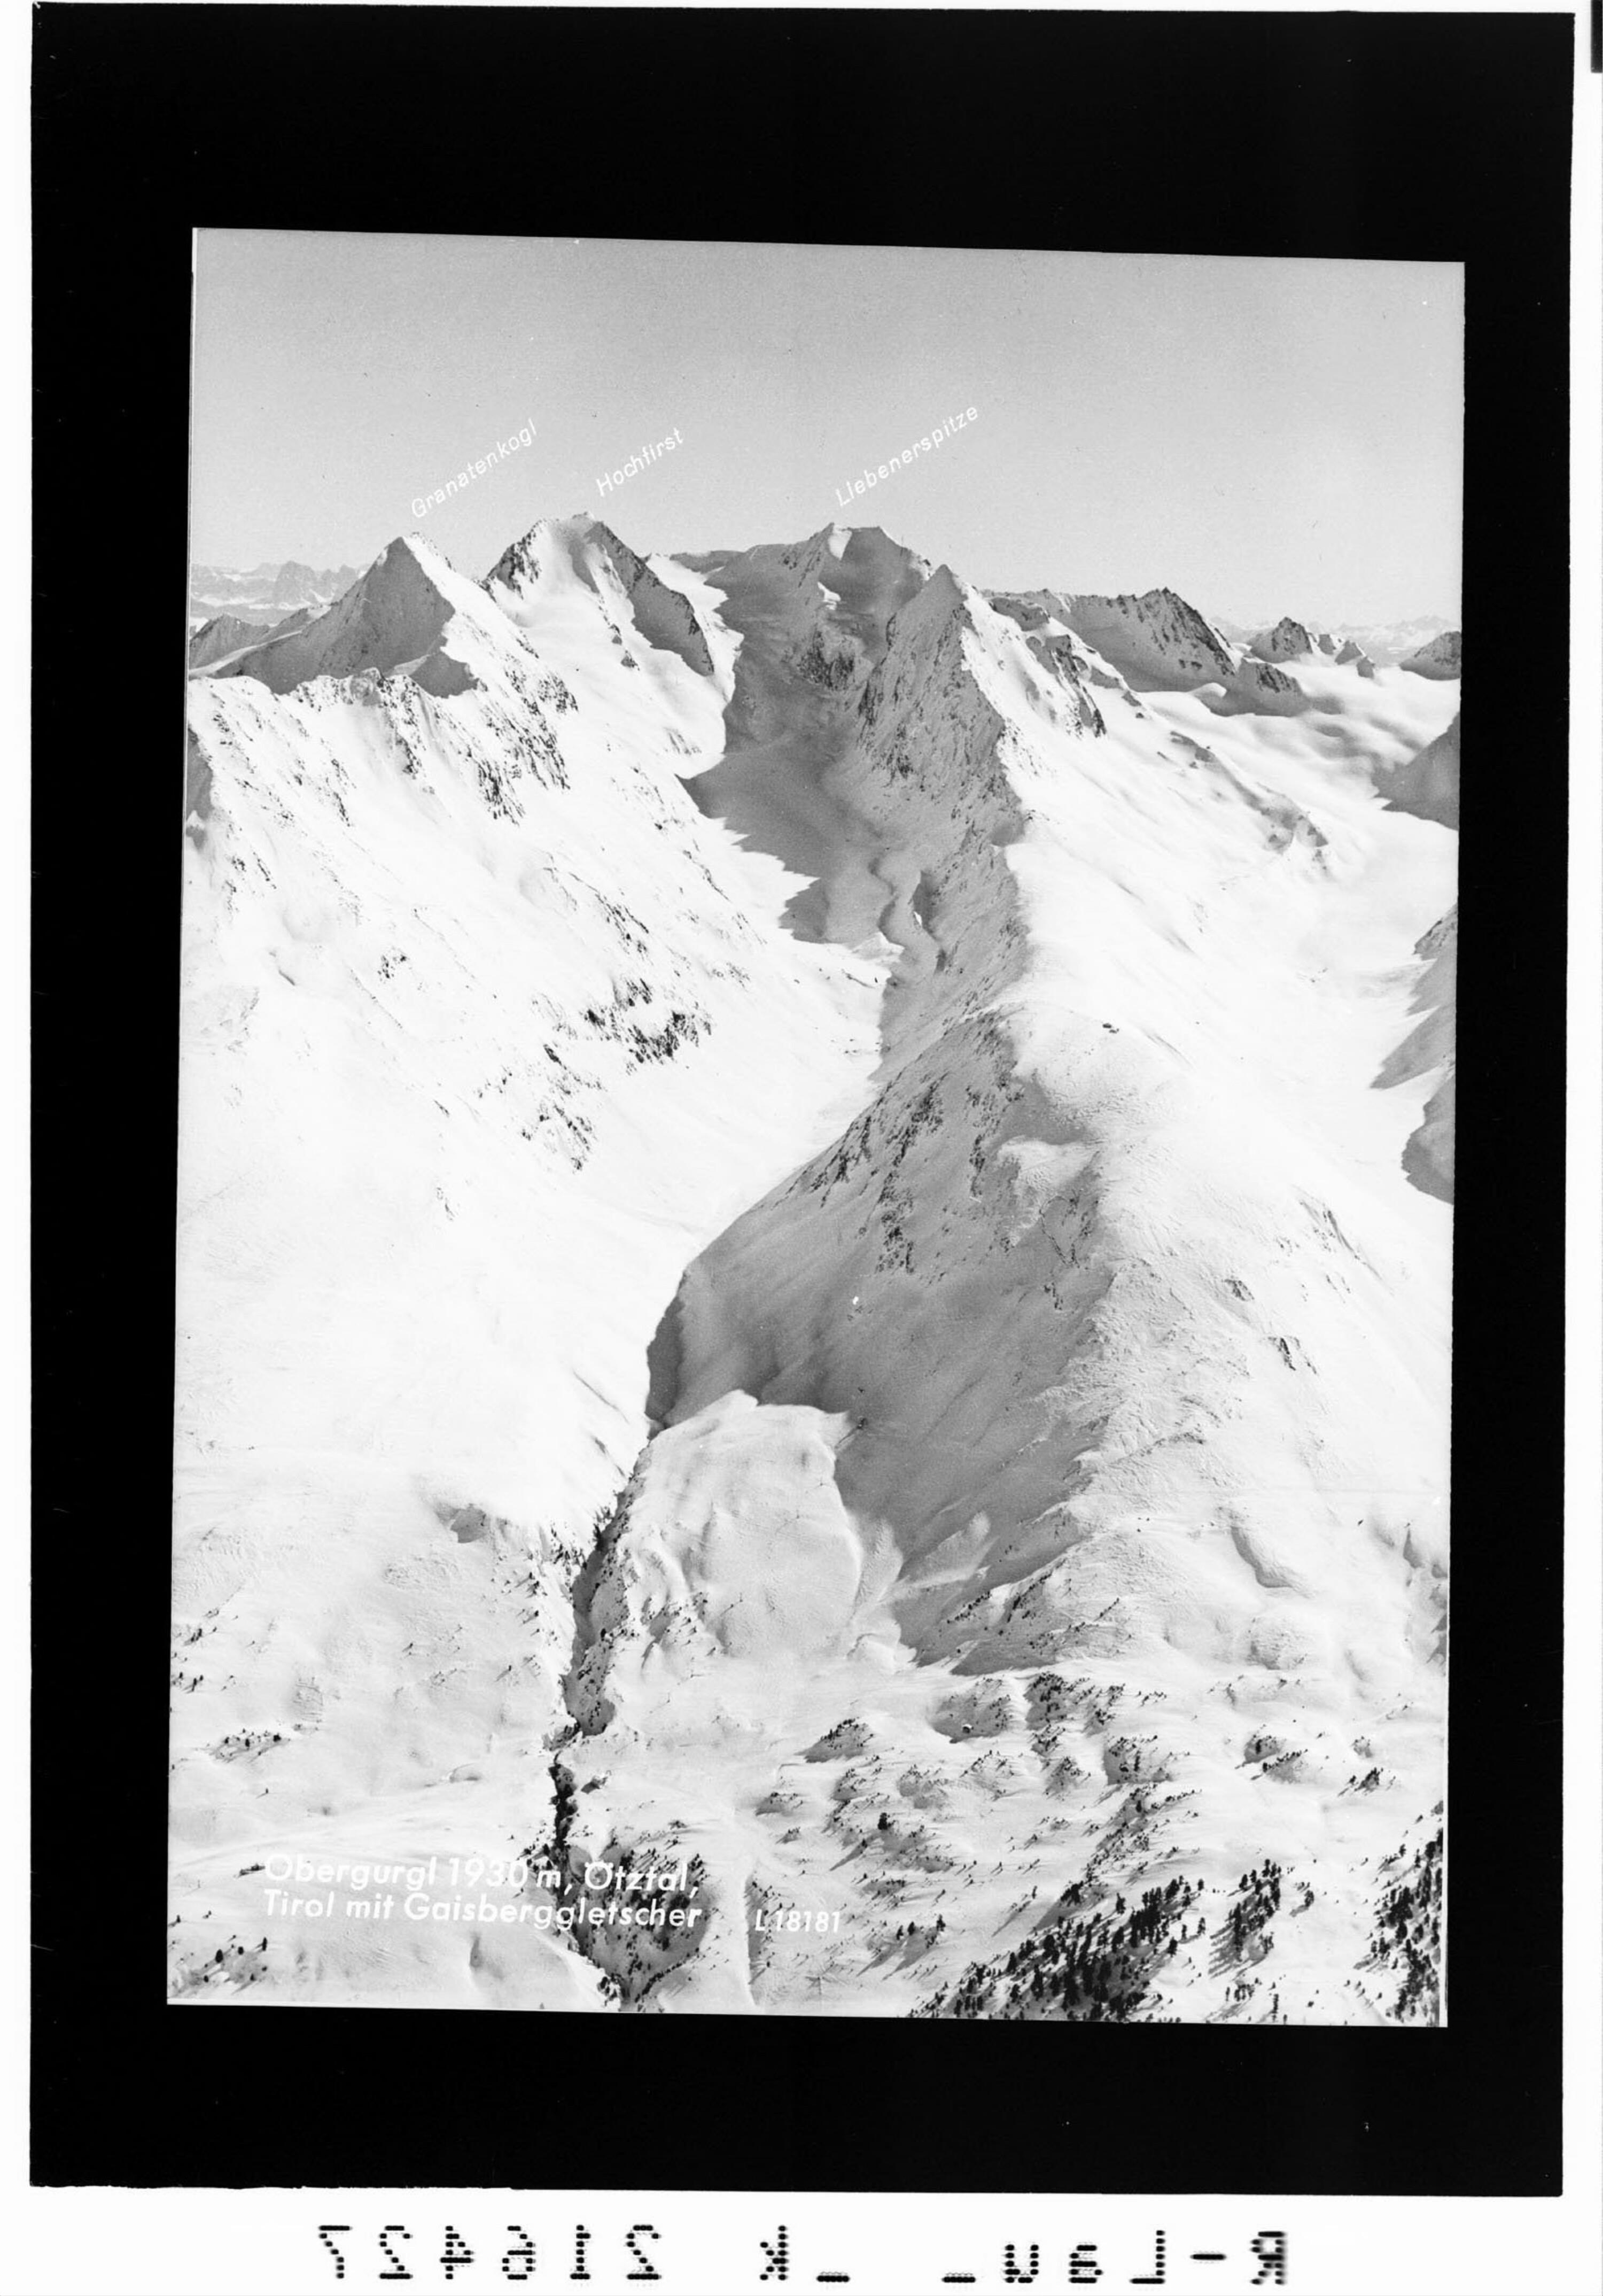 Obergurgl 1930 m, Ötztal, Tirol mit Gaisberggletscher></div>


    <hr>
    <div class=